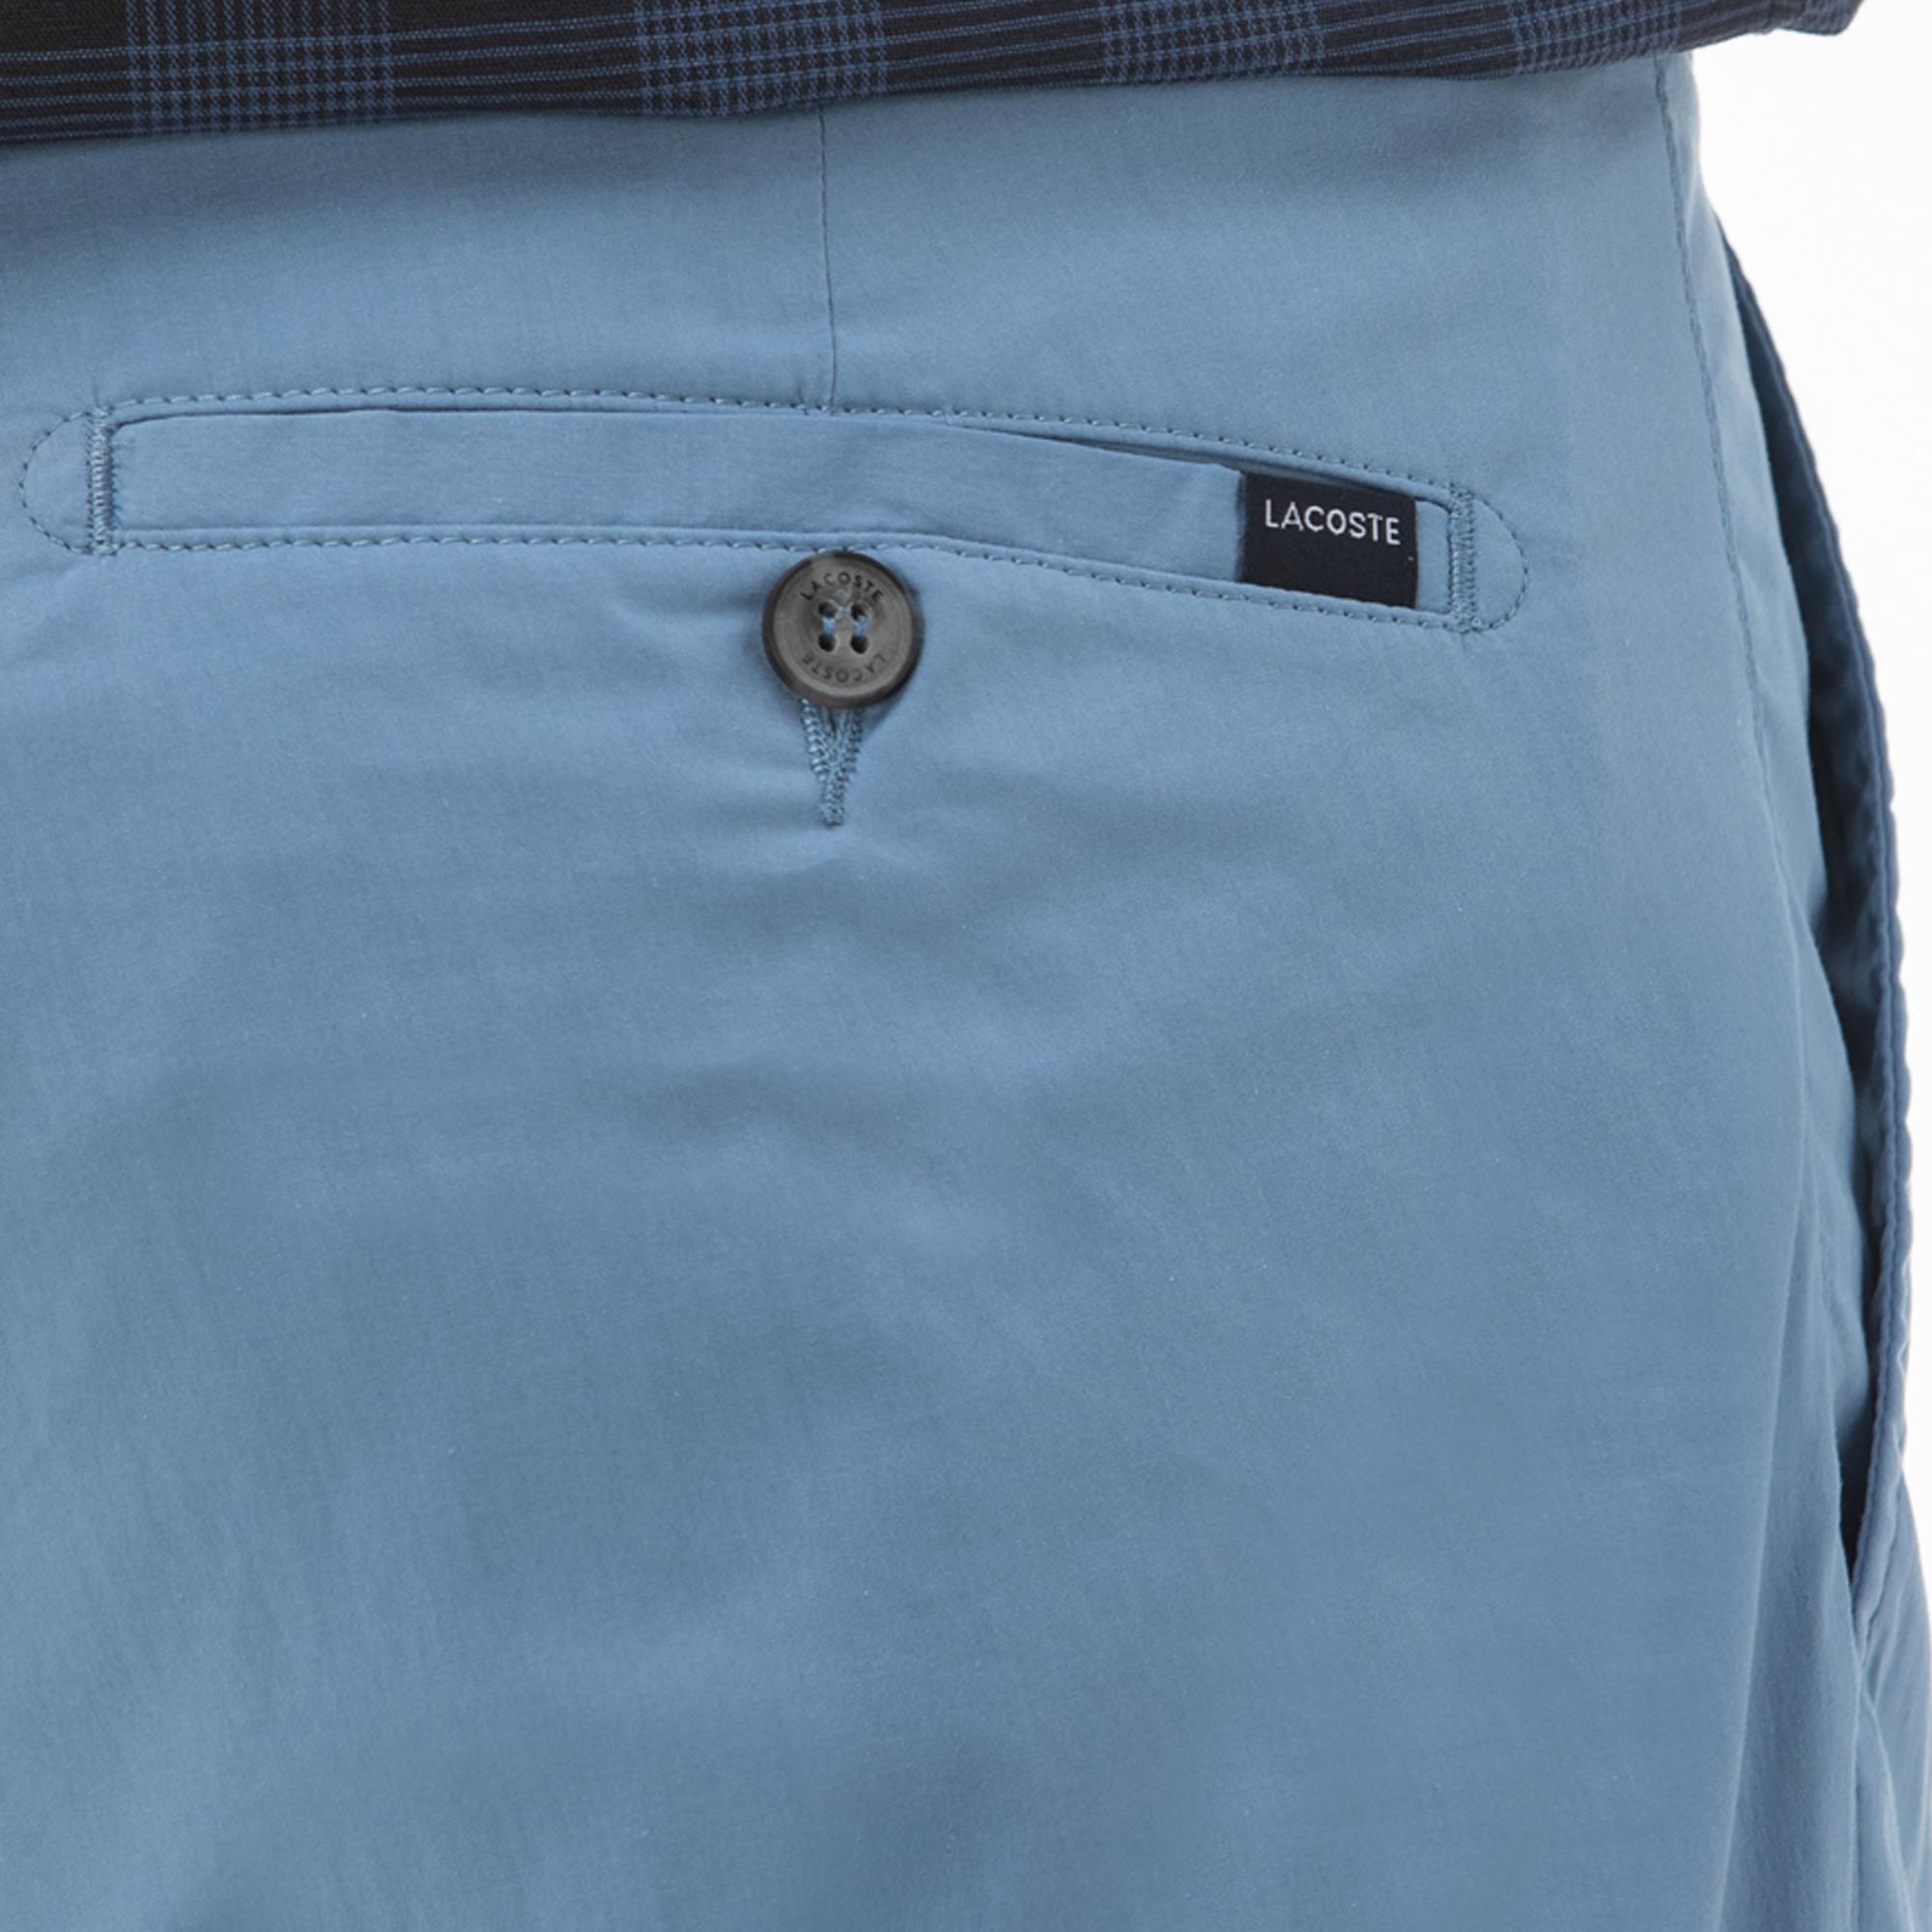 Lacoste Men's Slim Fit Trousers HH0990 